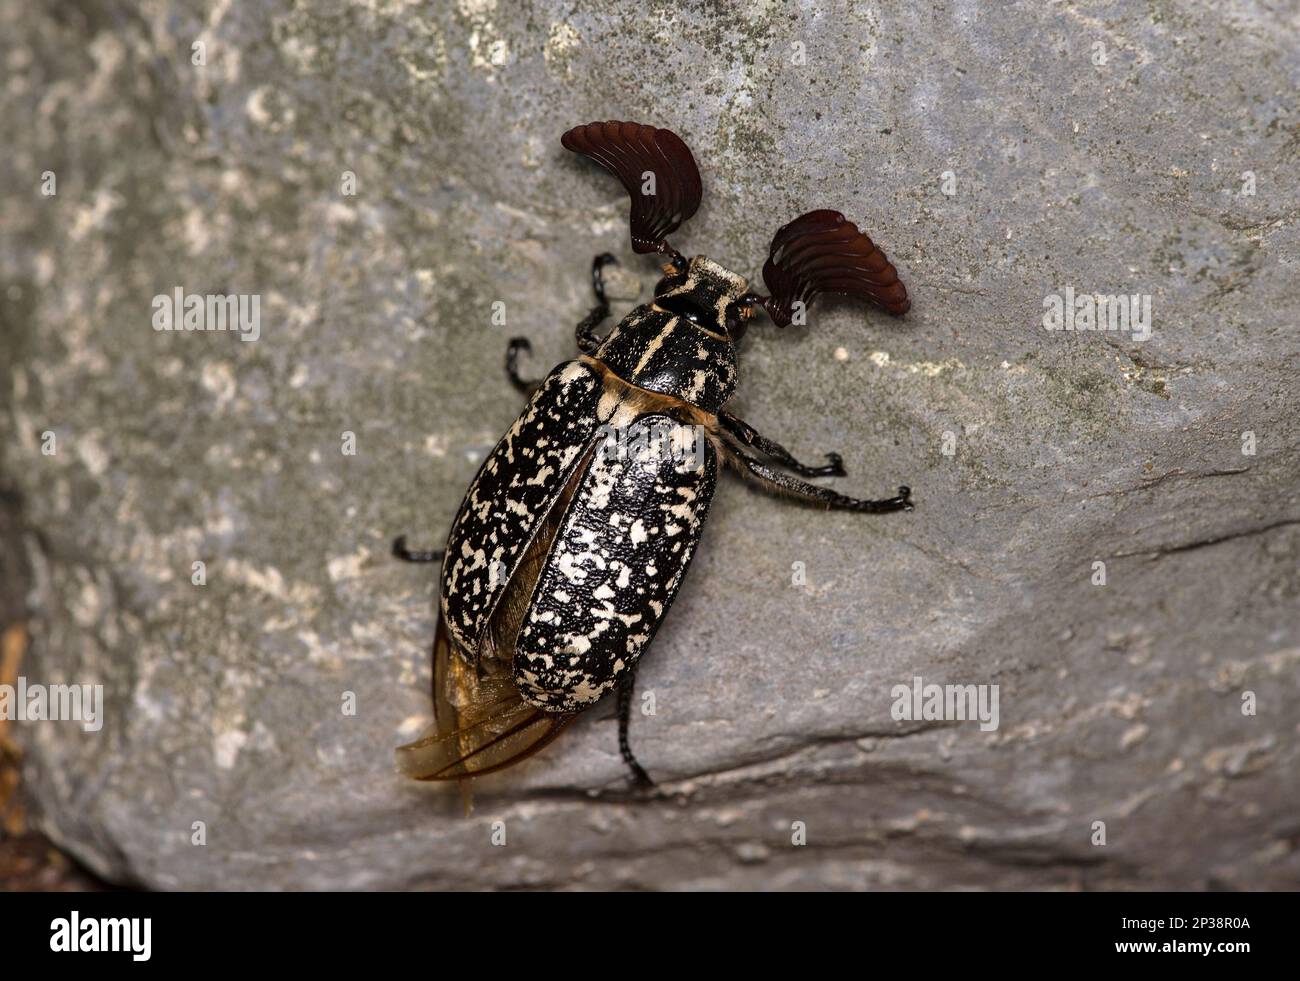 Männlicher Polyphylla fullo-Käfer, der zur Familie Scarabaeidae, Ovronnaz, Valais, Schweiz gehört Stockfoto